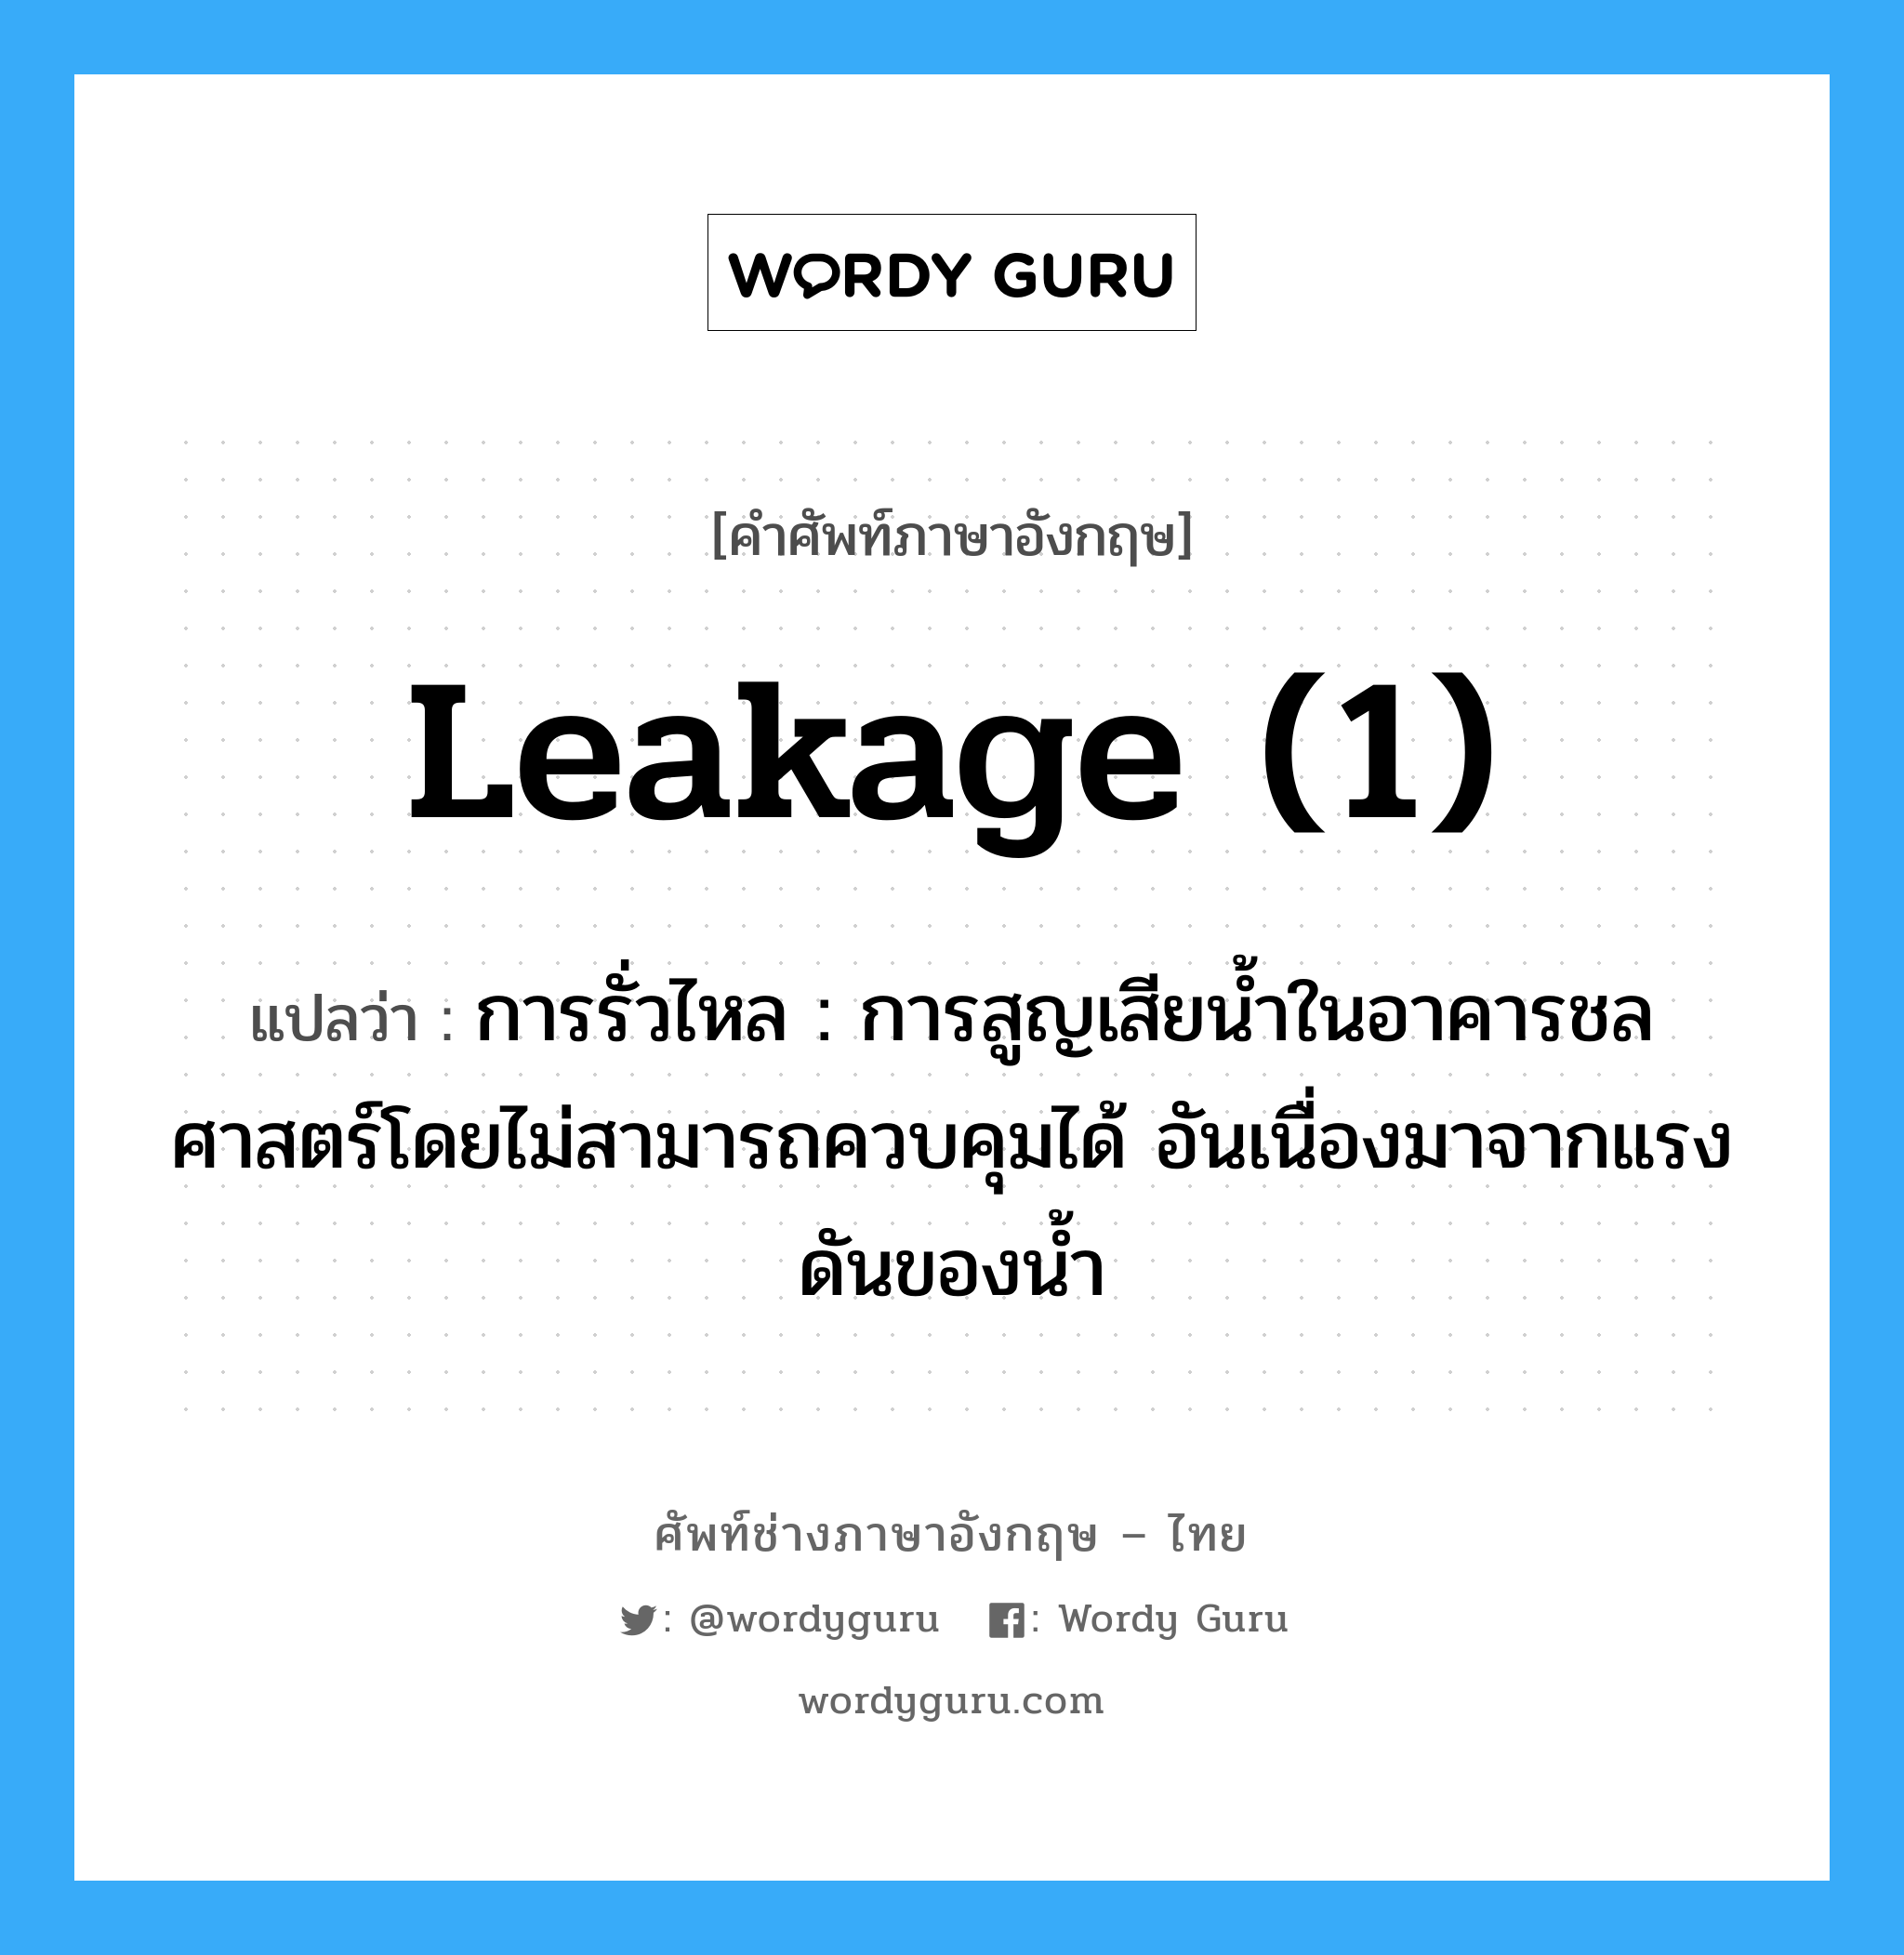 leakage (1) แปลว่า?, คำศัพท์ช่างภาษาอังกฤษ - ไทย leakage (1) คำศัพท์ภาษาอังกฤษ leakage (1) แปลว่า การรั่วไหล : การสูญเสียน้ำในอาคารชลศาสตร์โดยไม่สามารถควบคุมได้ อันเนื่องมาจากแรงดันของน้ำ